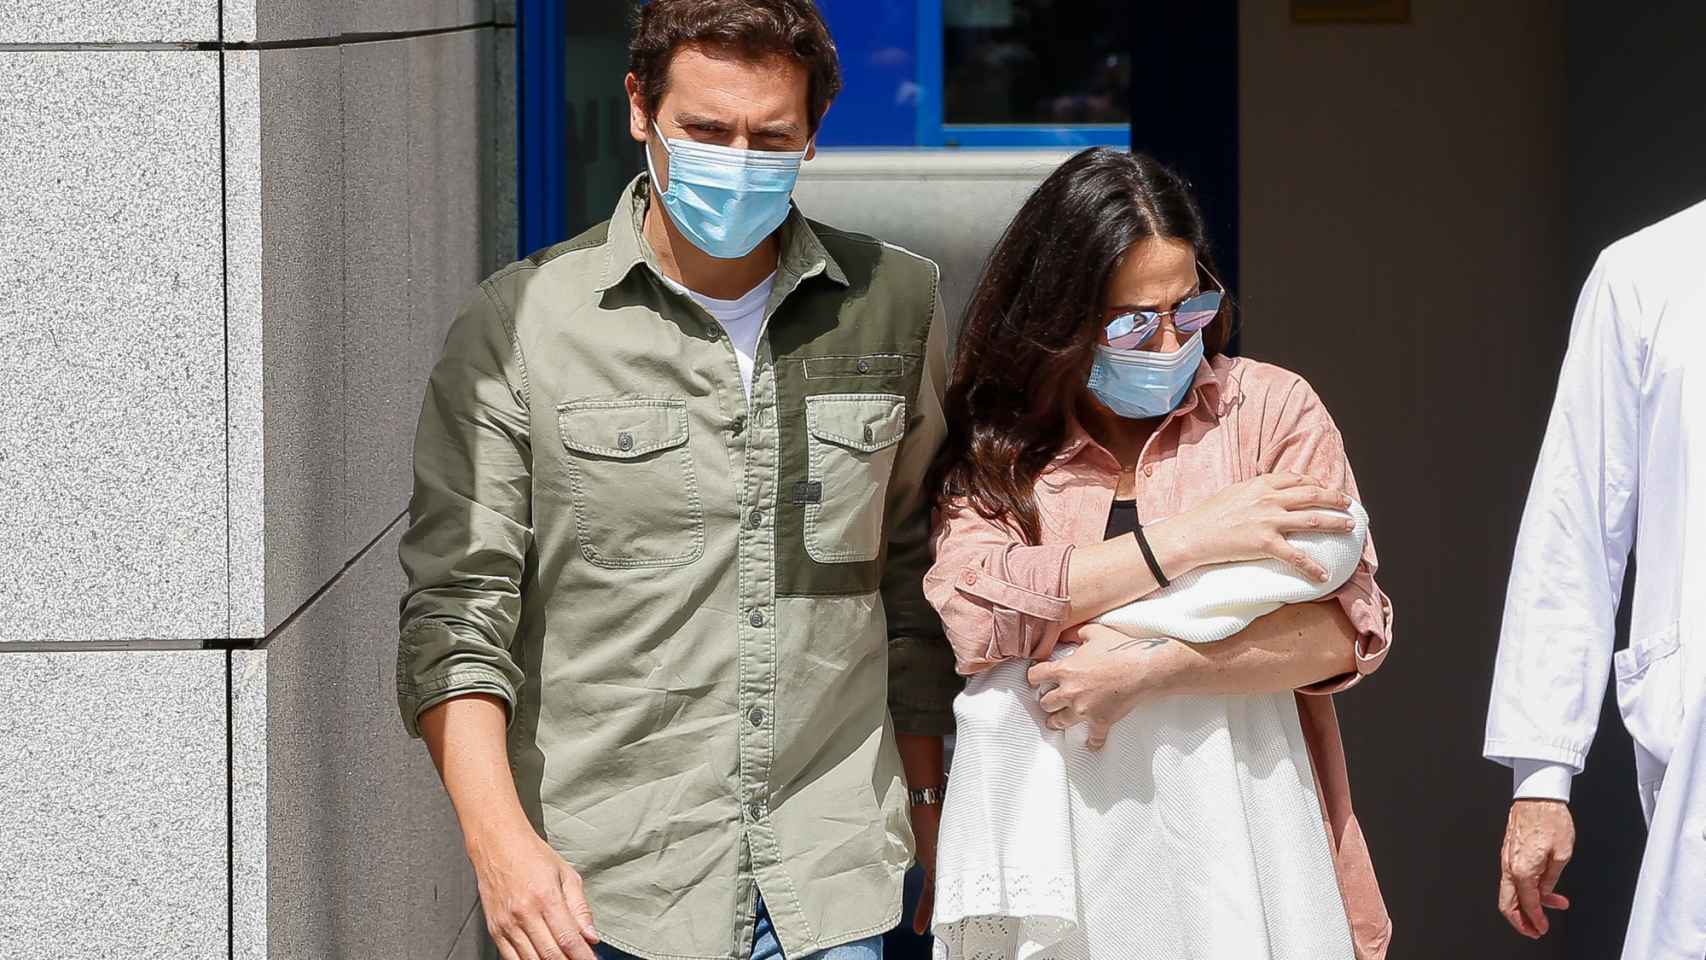 Malú y Albert Rivera, a la salida del hospital tras el nacimiento de su hija en común, Lucía, en 2020.